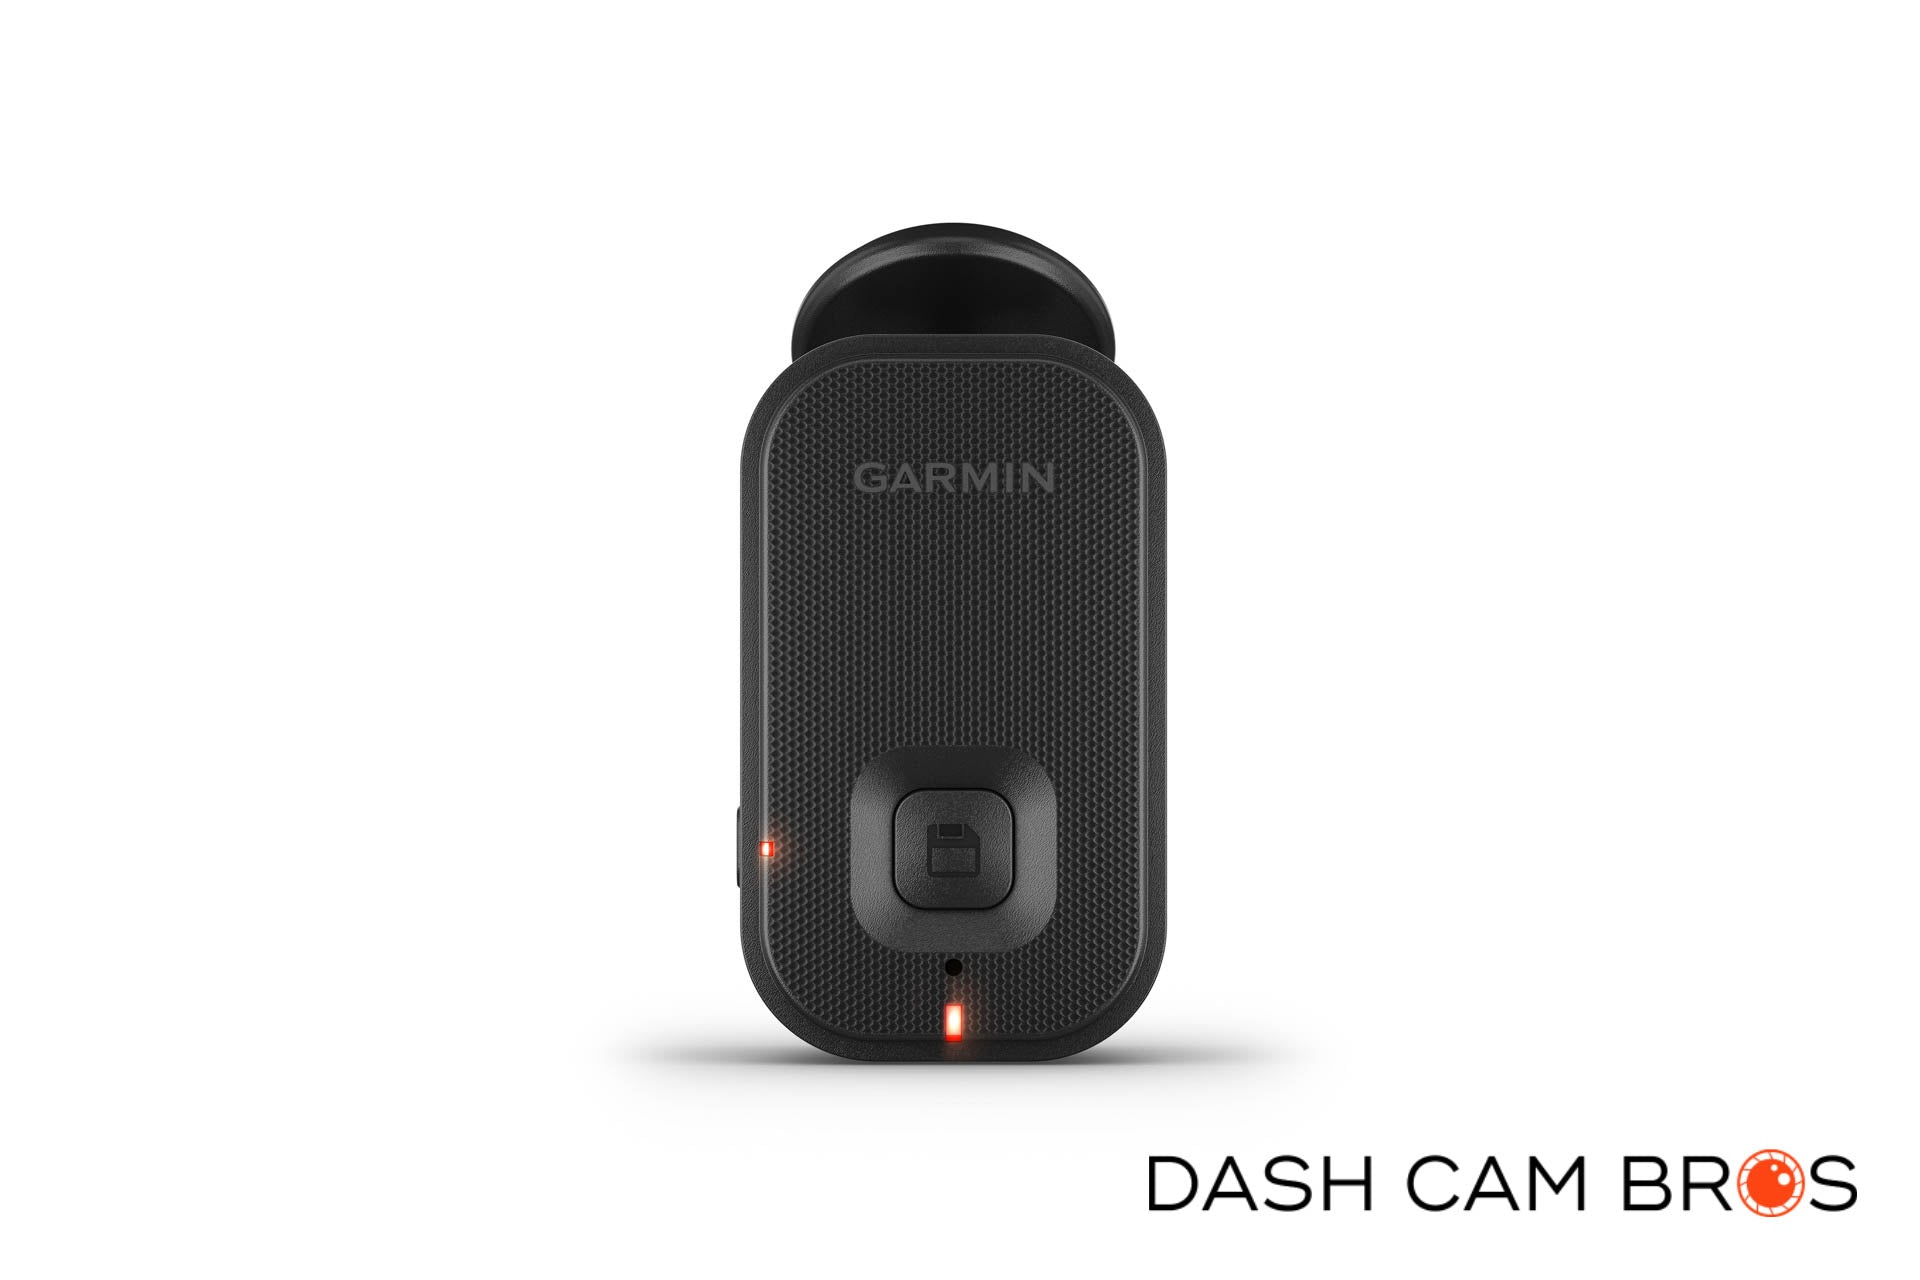 http://dashcambros.com/cdn/shop/products/dashcambros.com-garmin-dash-cam-mini-2-2.jpg?v=1624032380